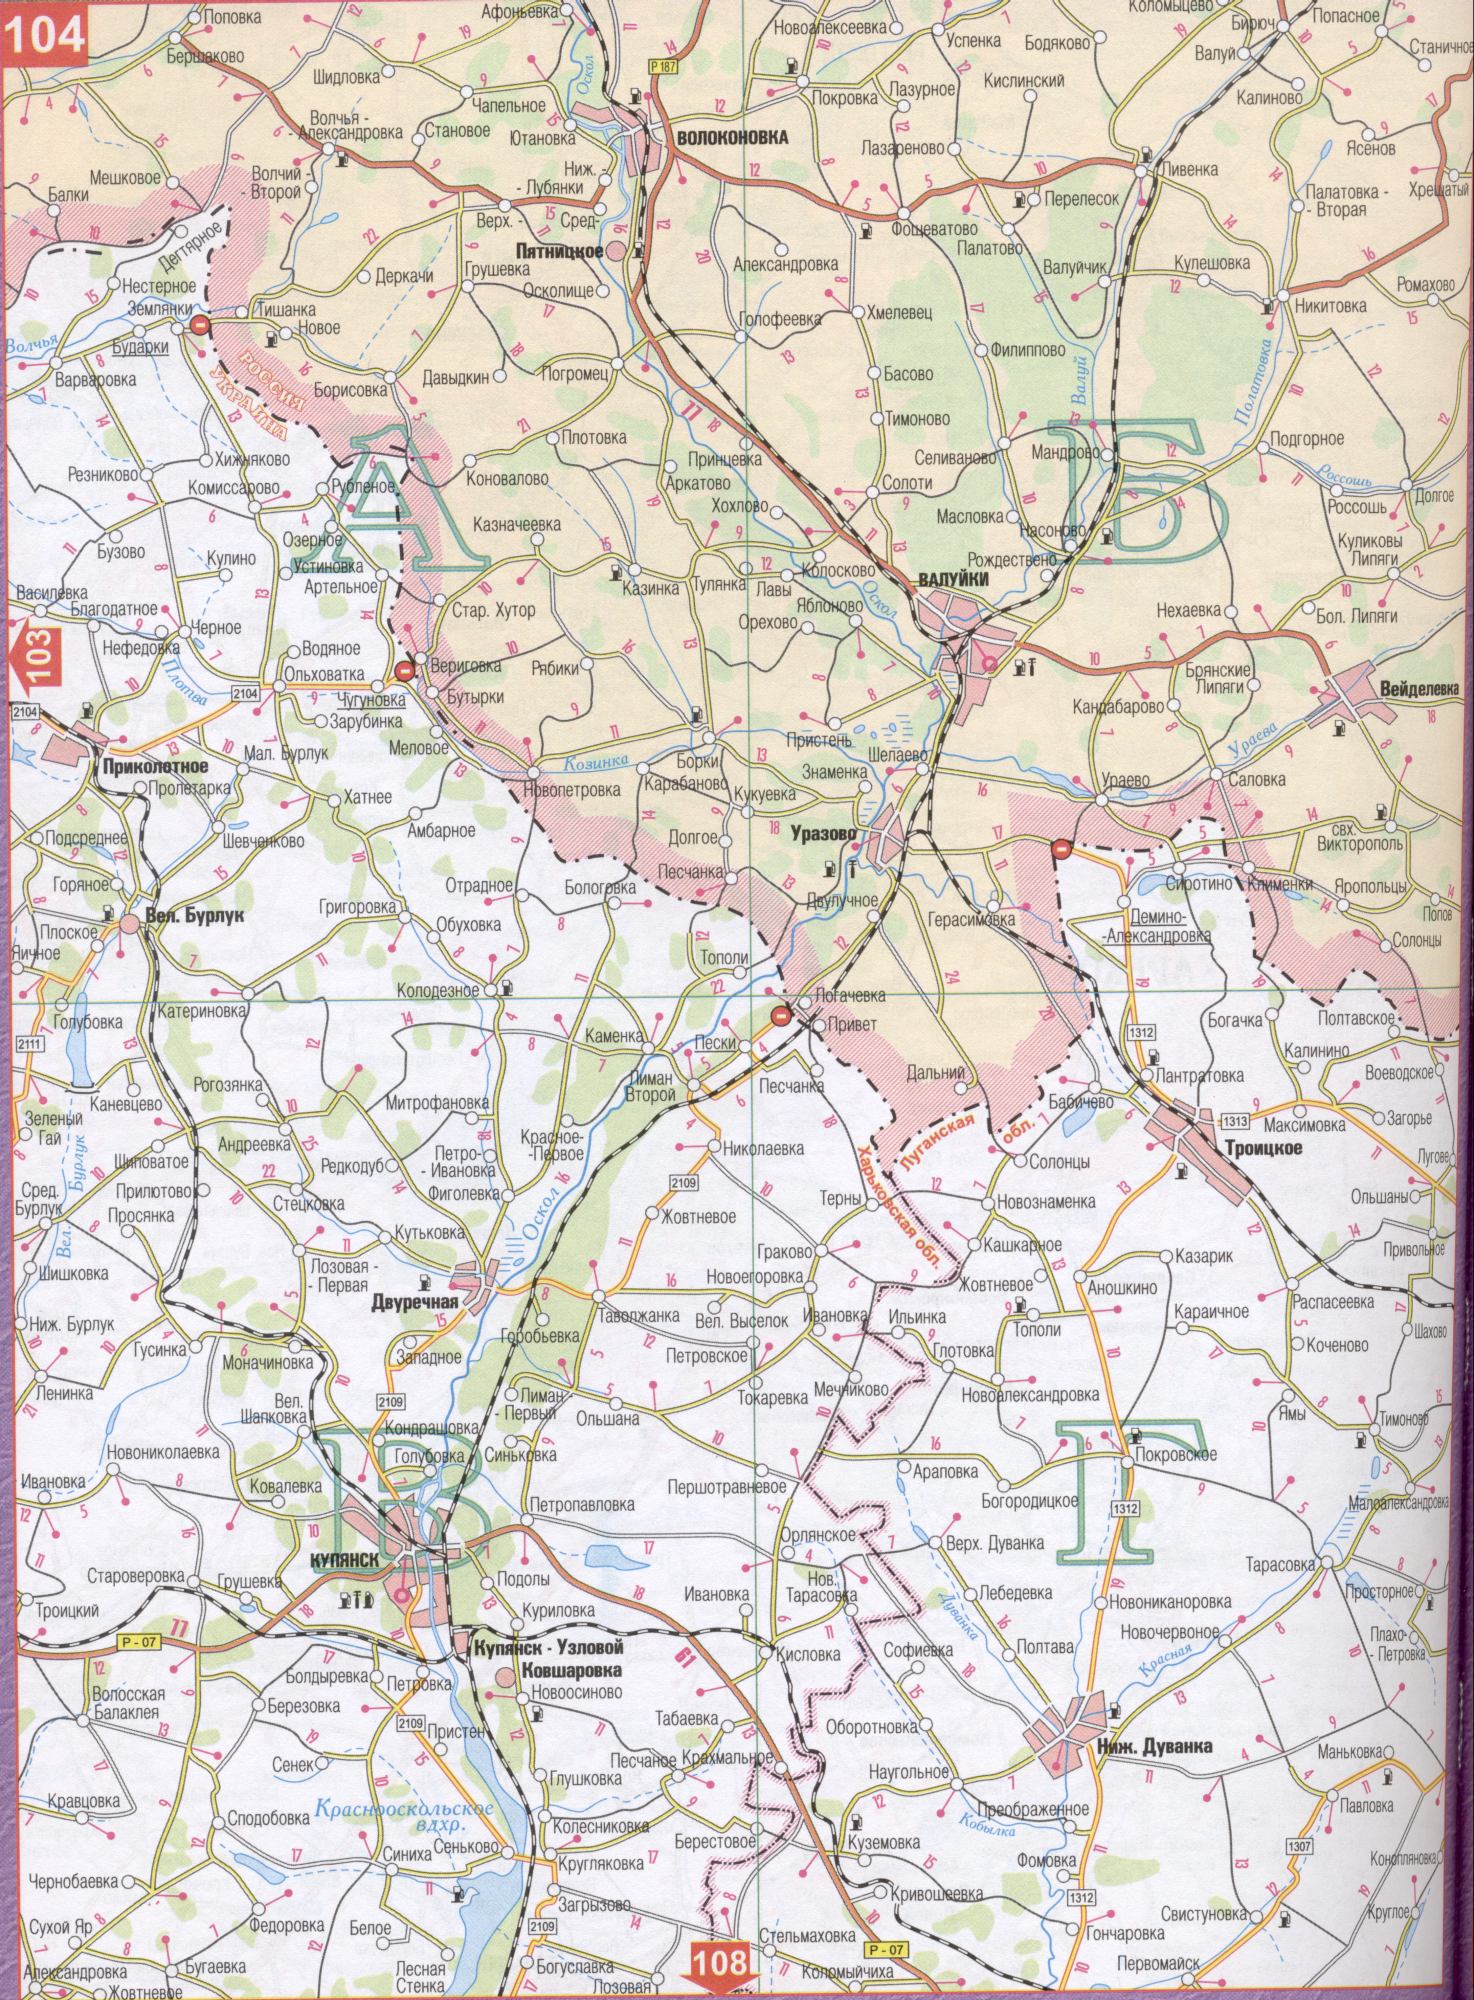 Карта Харьковской области Украины (областной центр г.Харьков). Скачать бесплатно подробную карту автомобильных дорог, C0